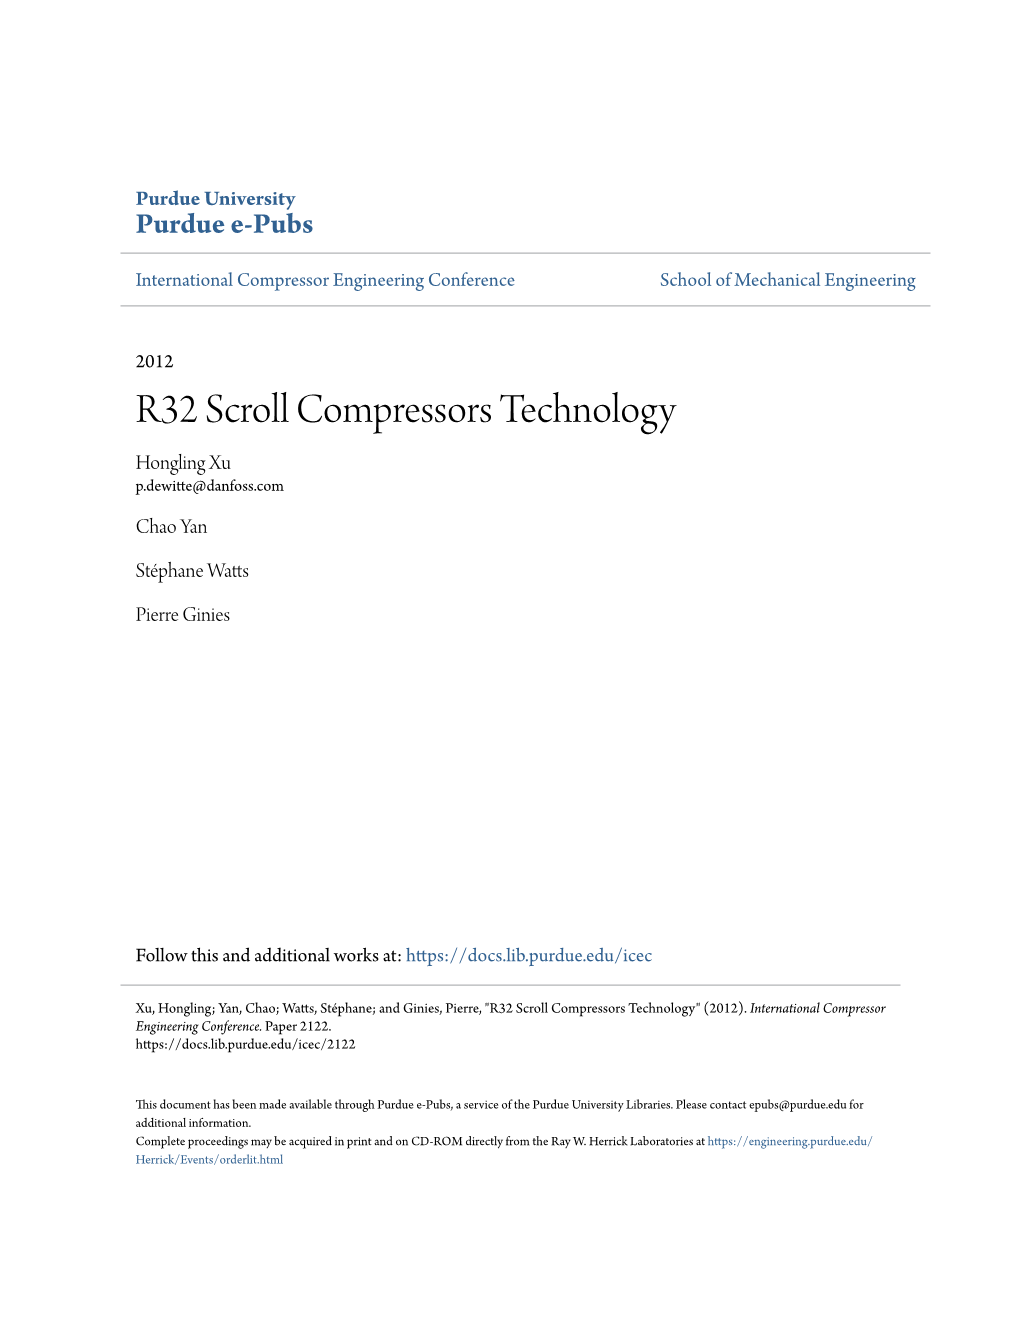 R32 Scroll Compressors Technology Hongling Xu P.Dewitte@Danfoss.Com